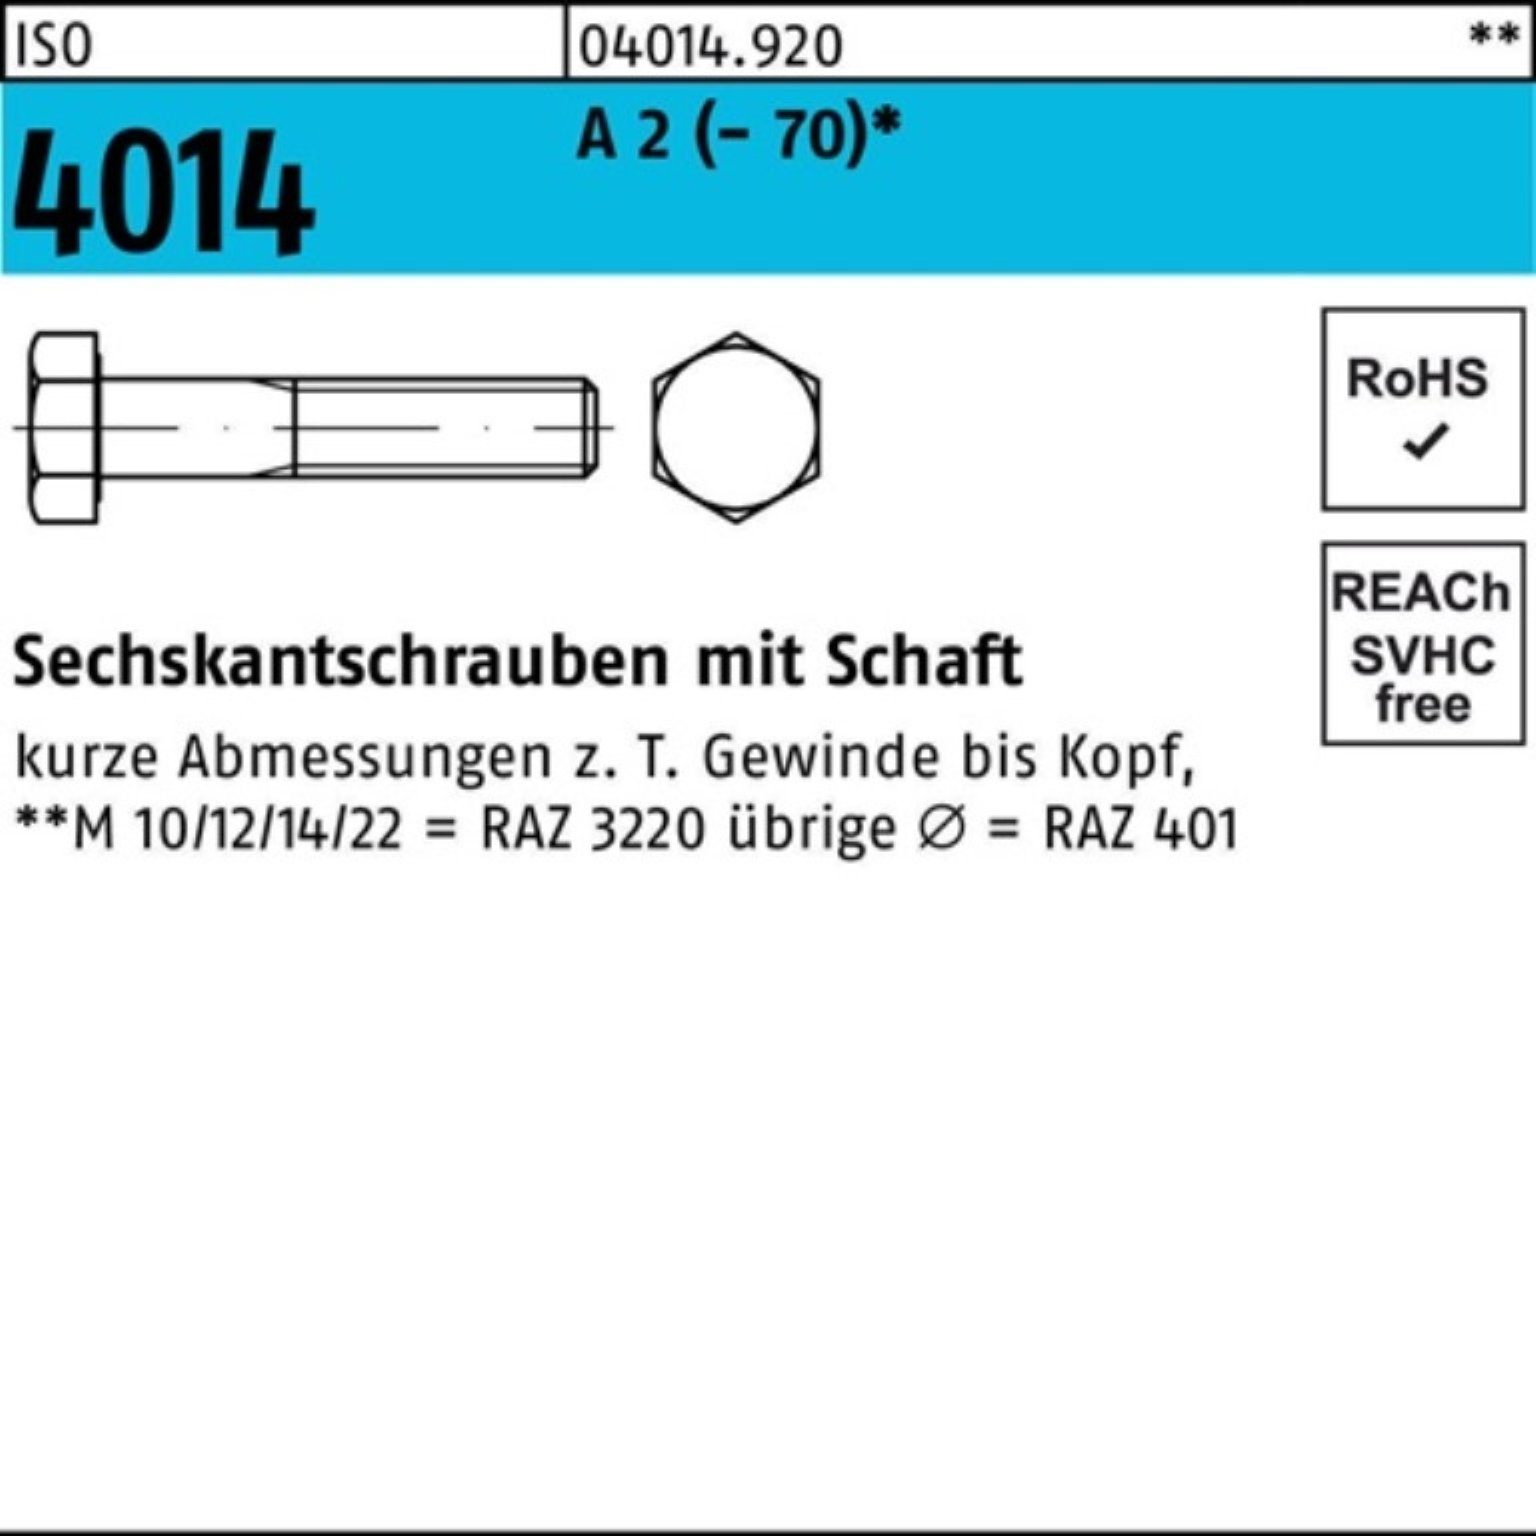 Bufab Sechskantschraube 100er Pack Sechskantschraube 4014 ISO A St 70 M16x (70) 25 Schaft 2